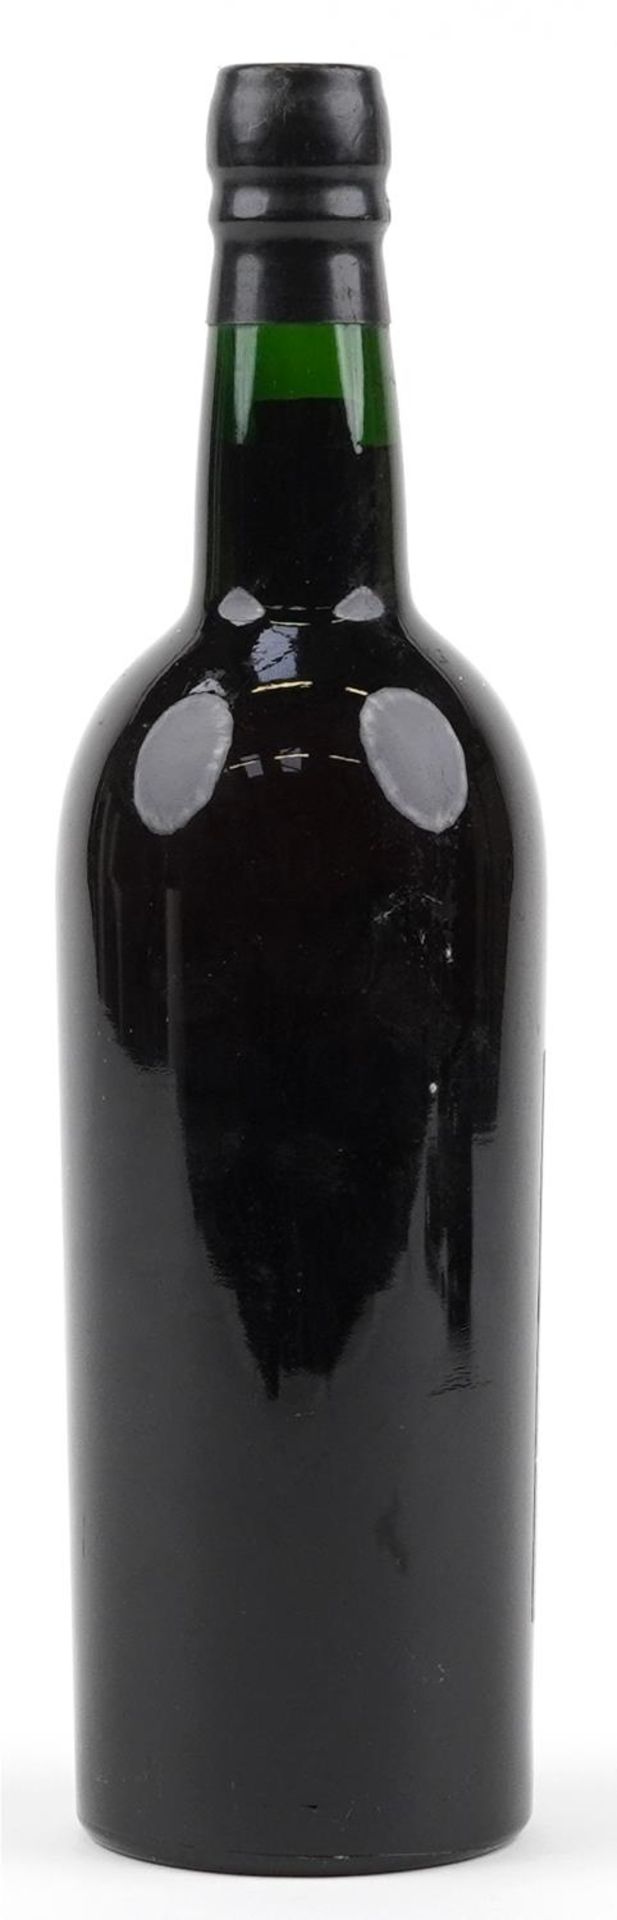 Bottle of Croft 1963 vintage port - Bild 2 aus 2